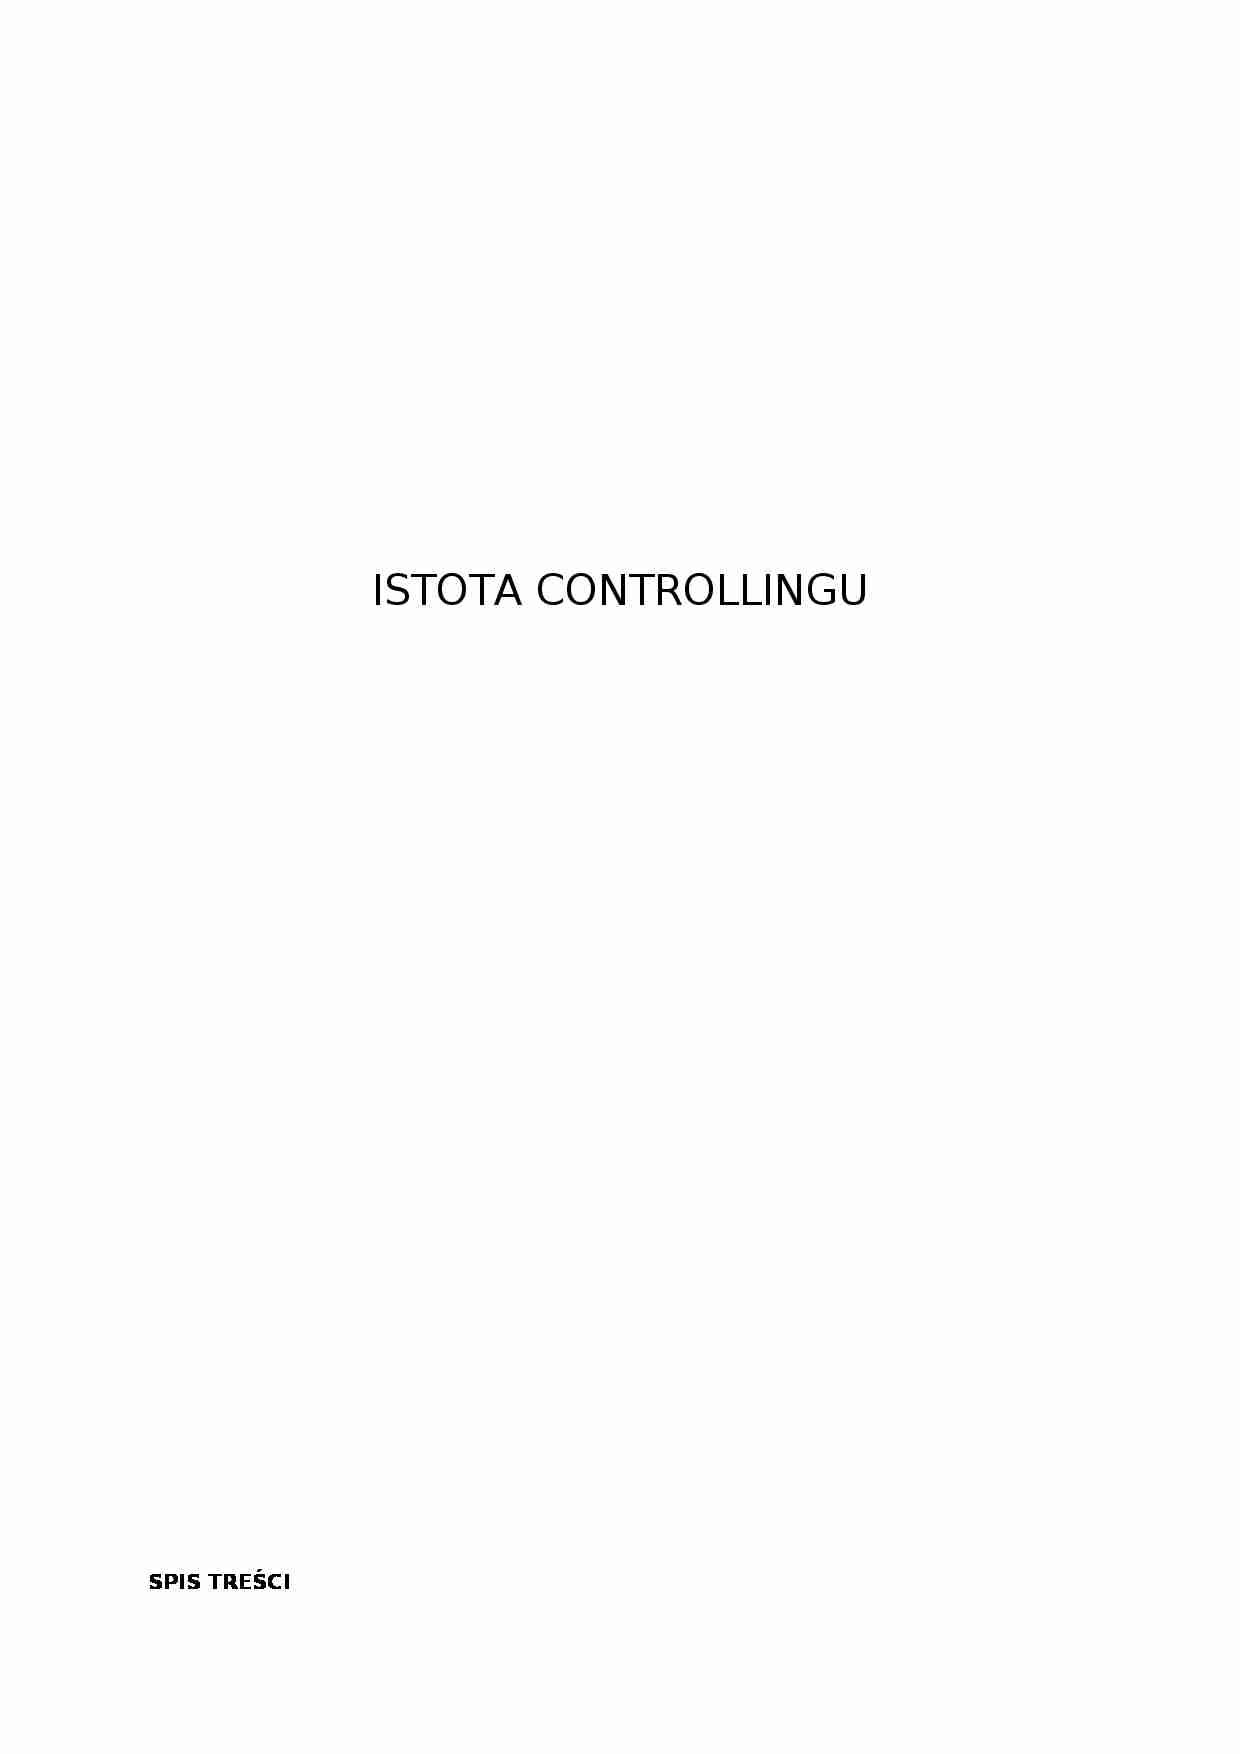 Istota Controllingu - rodzaje i funkcje - strona 1